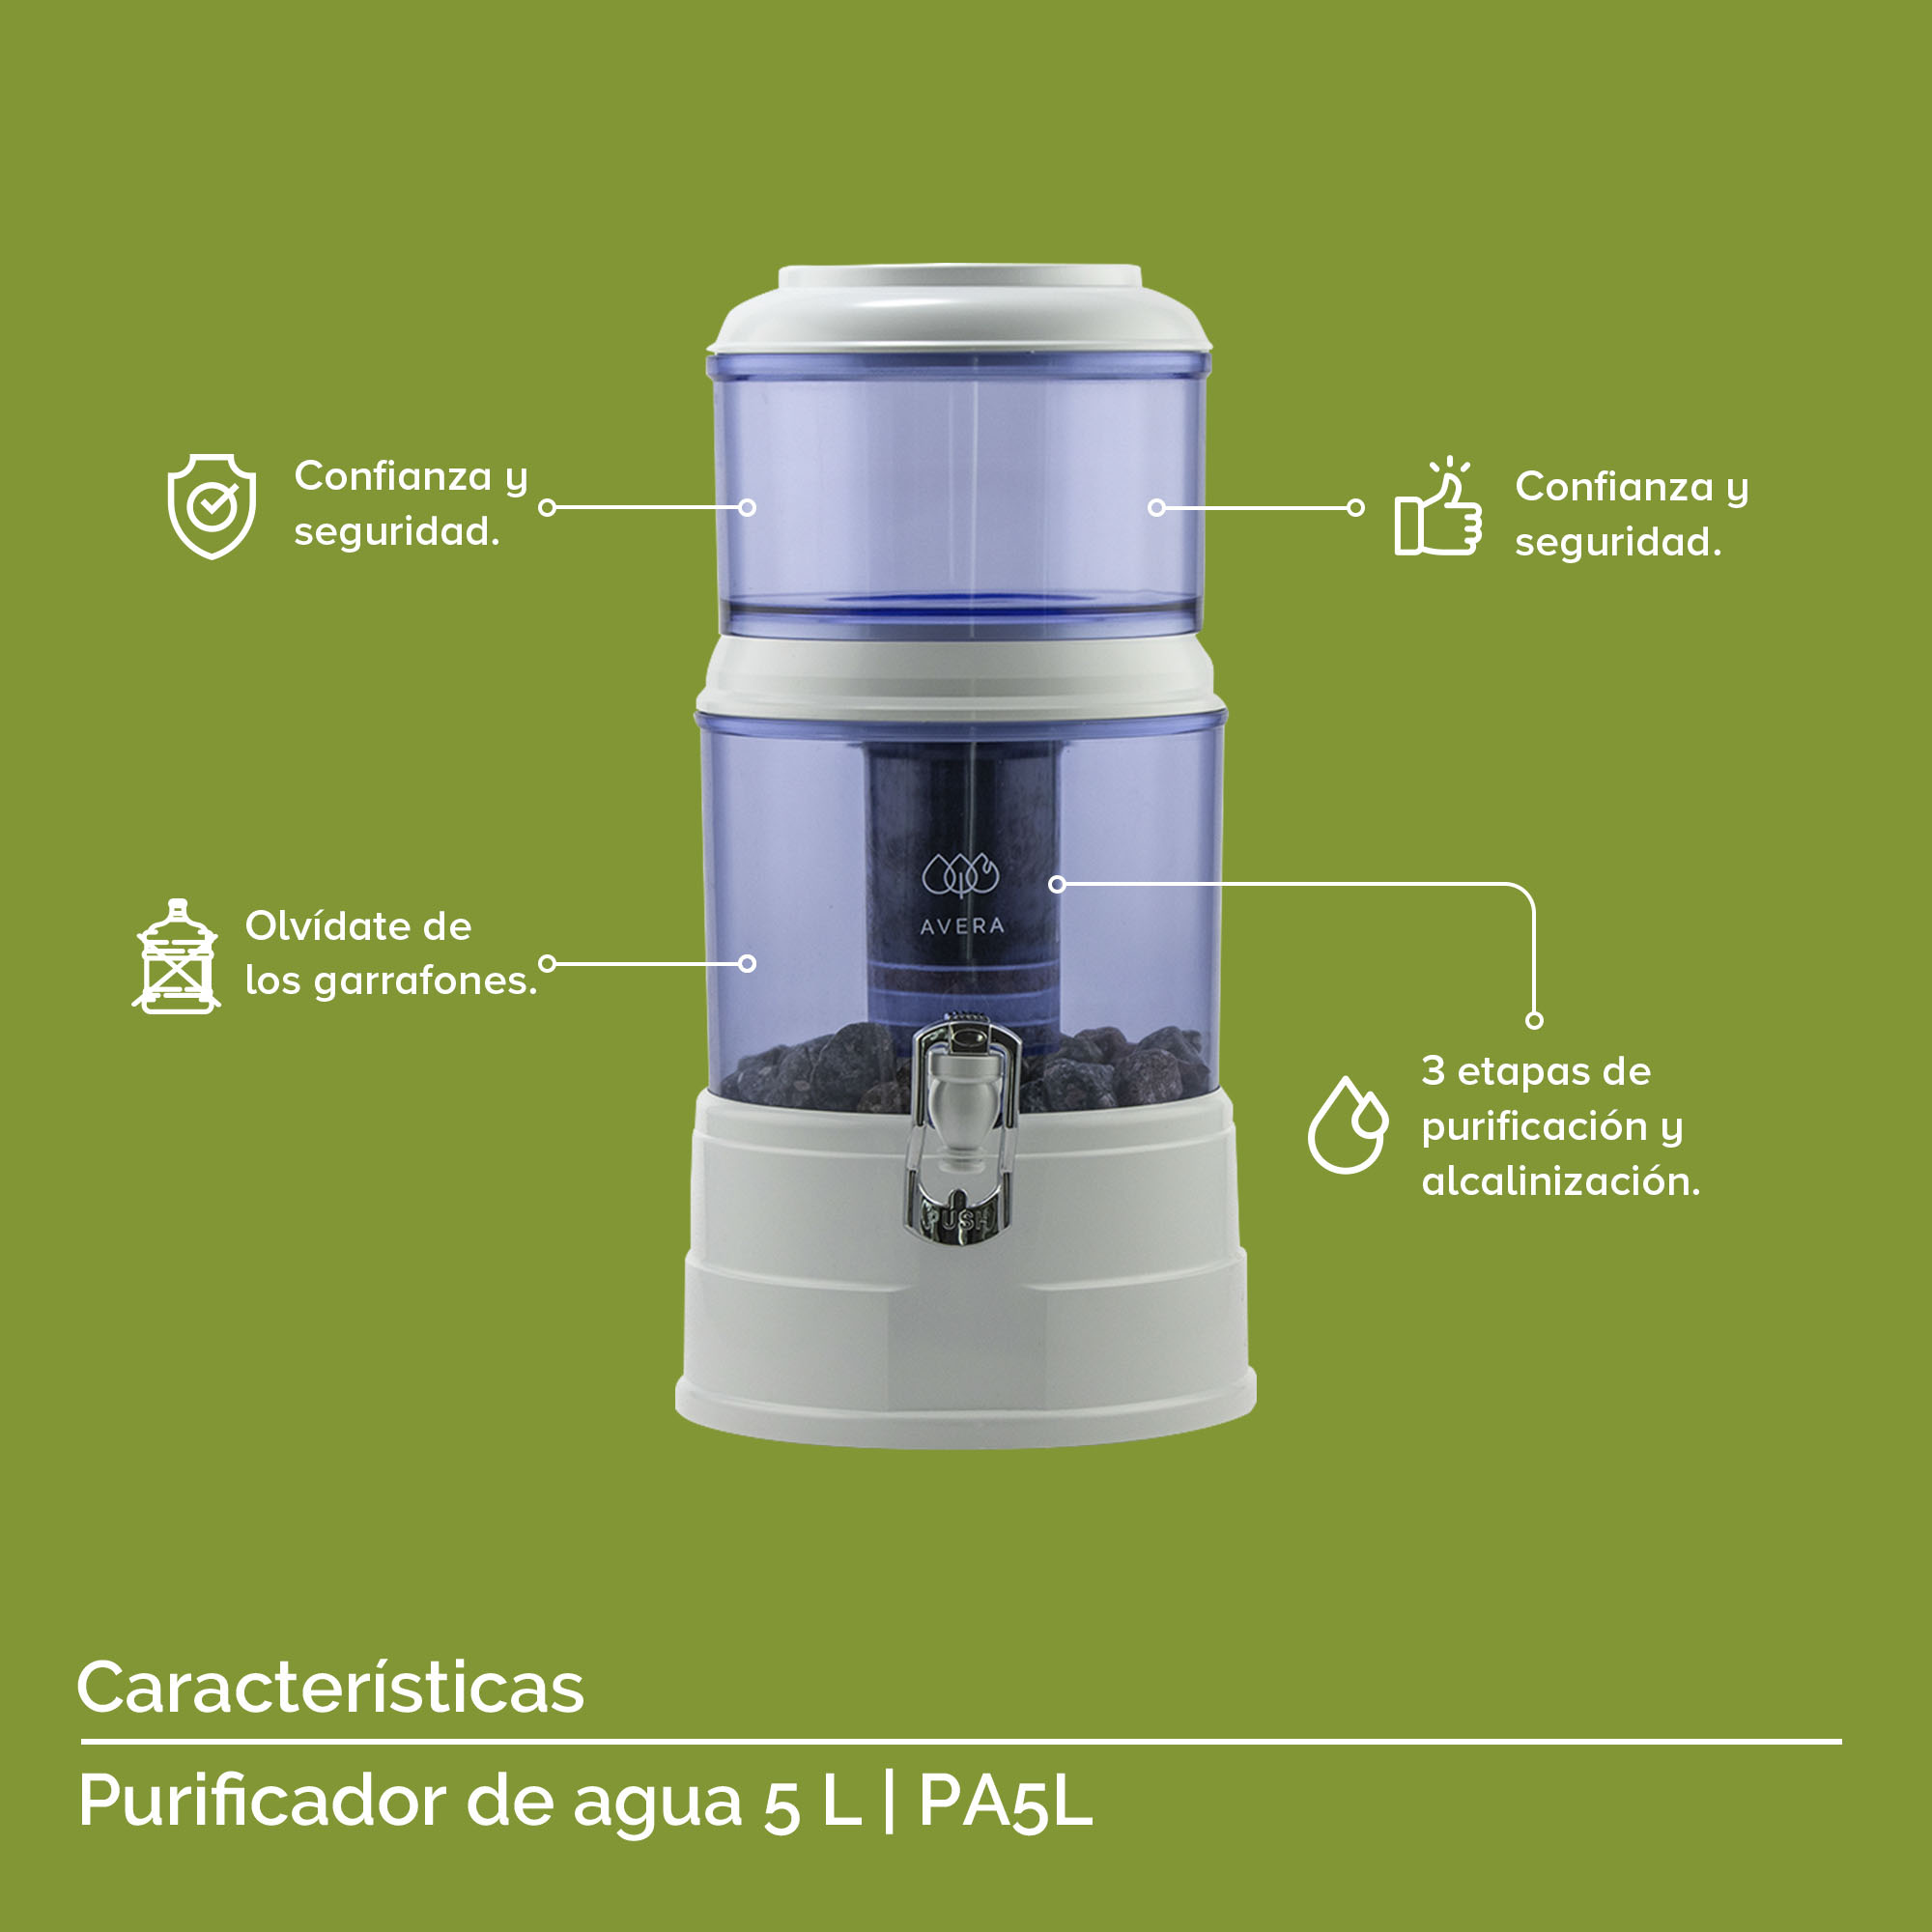 AVERA Purificador De Agua para 5 Litros. Filtro De Agua con 3 etapas Filtro de carbón activado